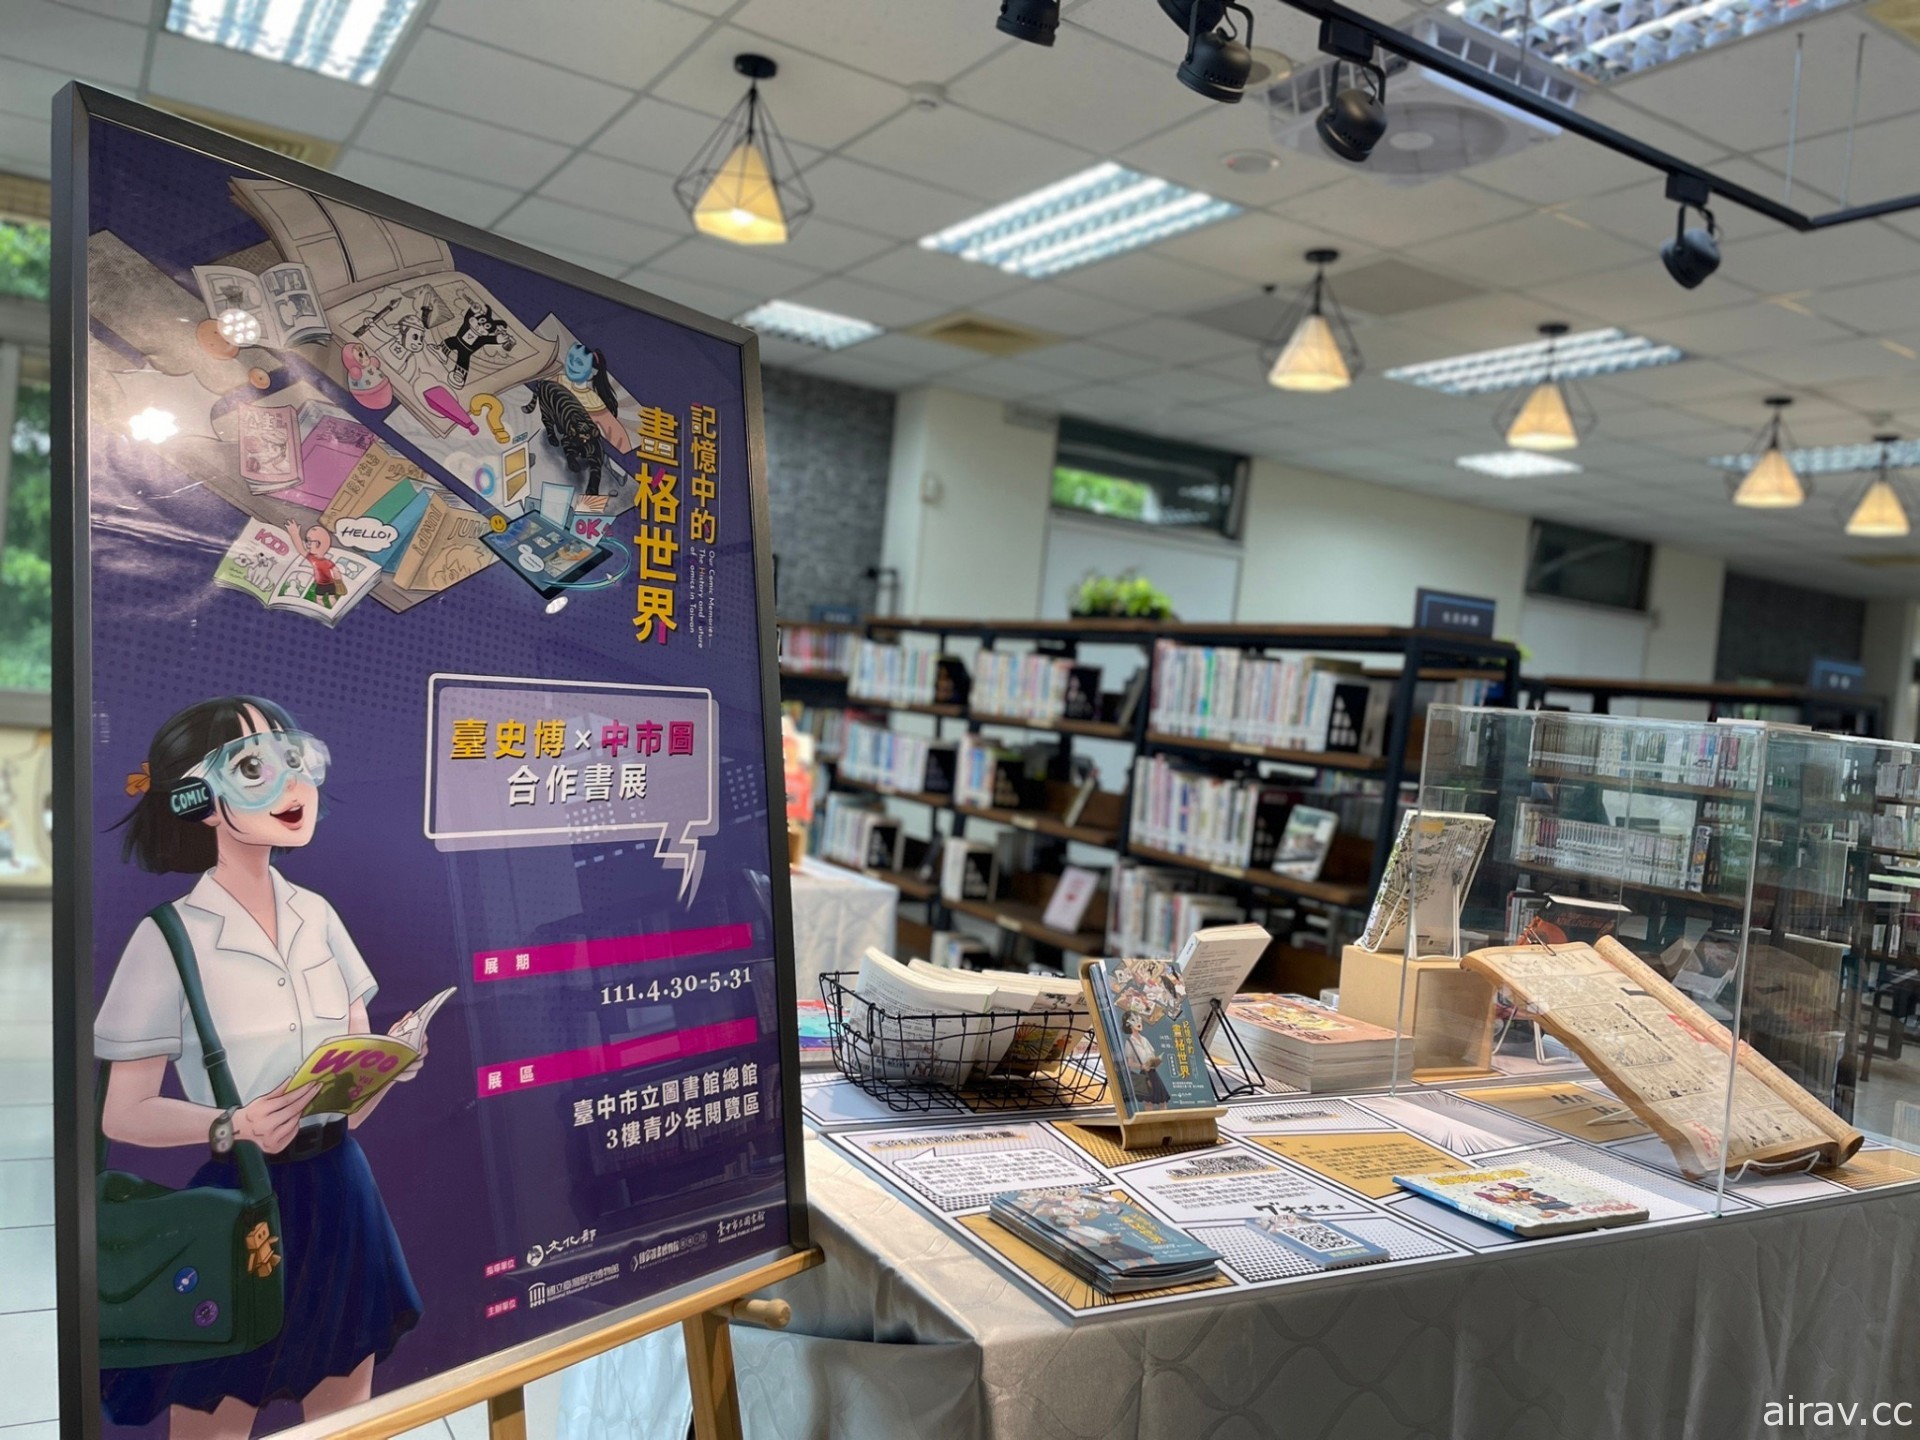 國立臺灣歷史博串聯北中南圖書館推出「記憶中的畫格世界－漫畫在臺灣」特展與講座